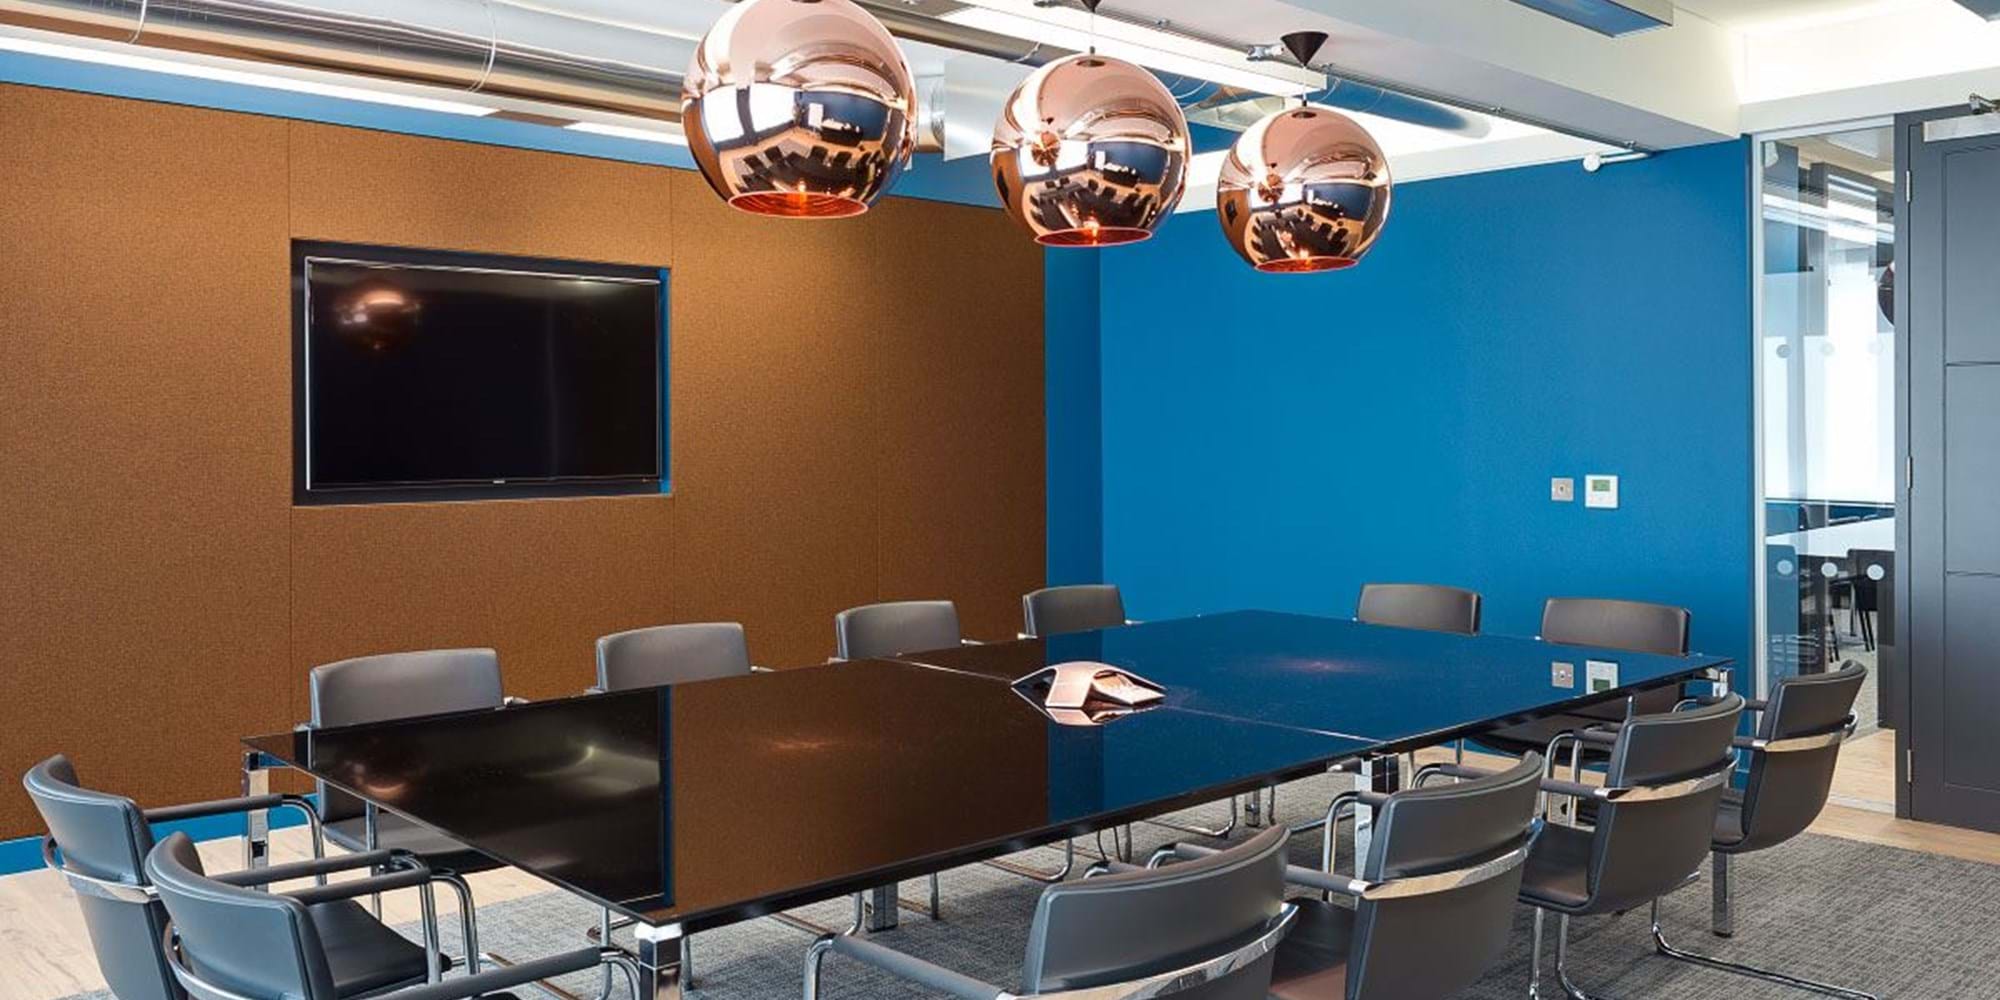 Modus Workspace office design, fit out and refurbishment - Les Concierges - Meeting Room - Les Concierges 07.jpg